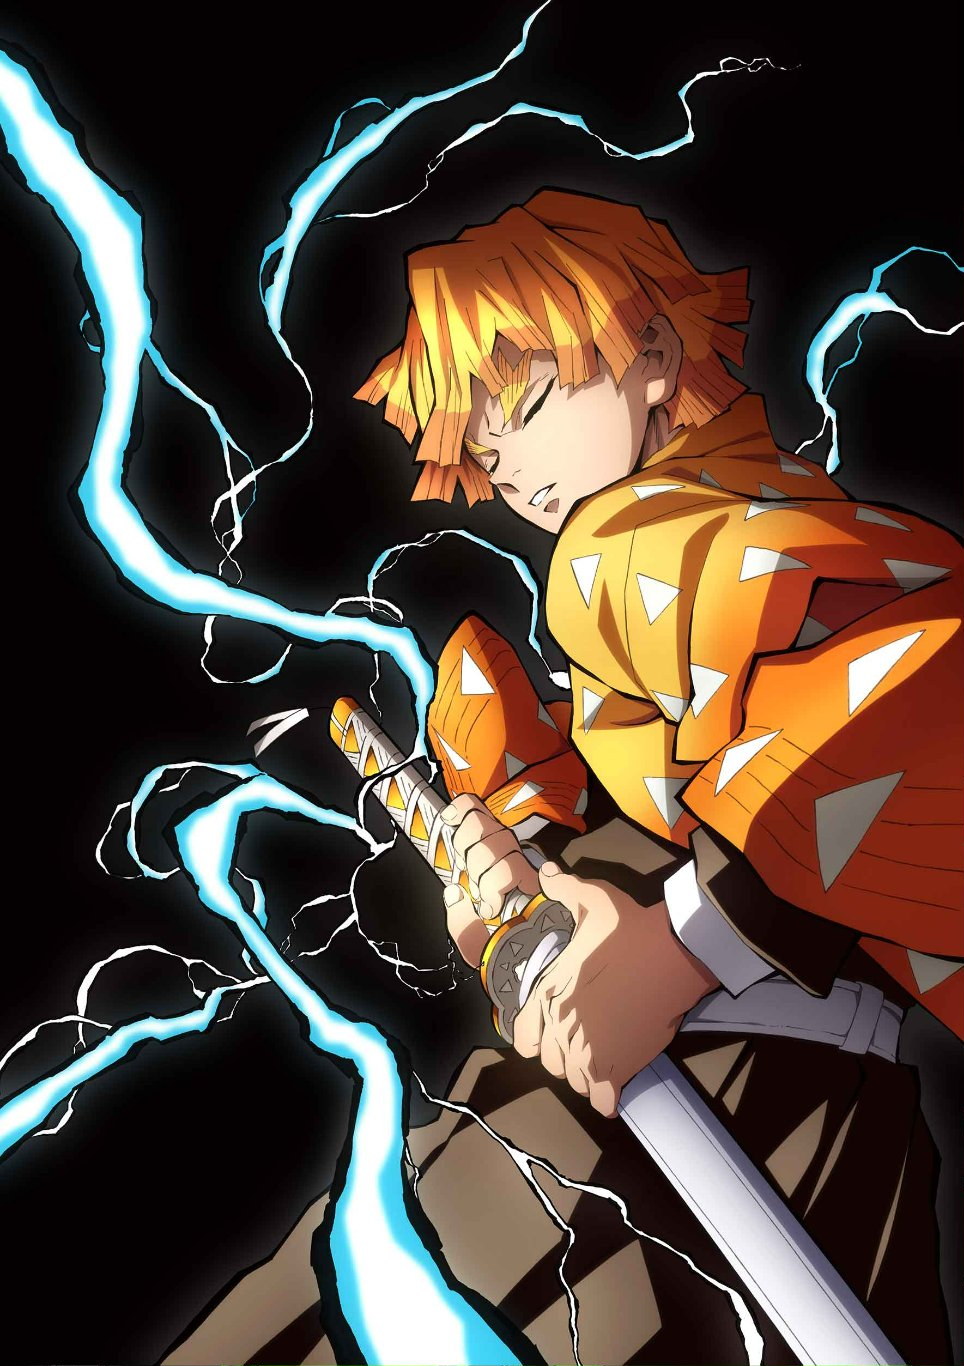 GRABB KAR  Anime Lightning Bolt Printed Designer Hard Phone Case Back  Cover for iPhone XR  Amazonin Electronics